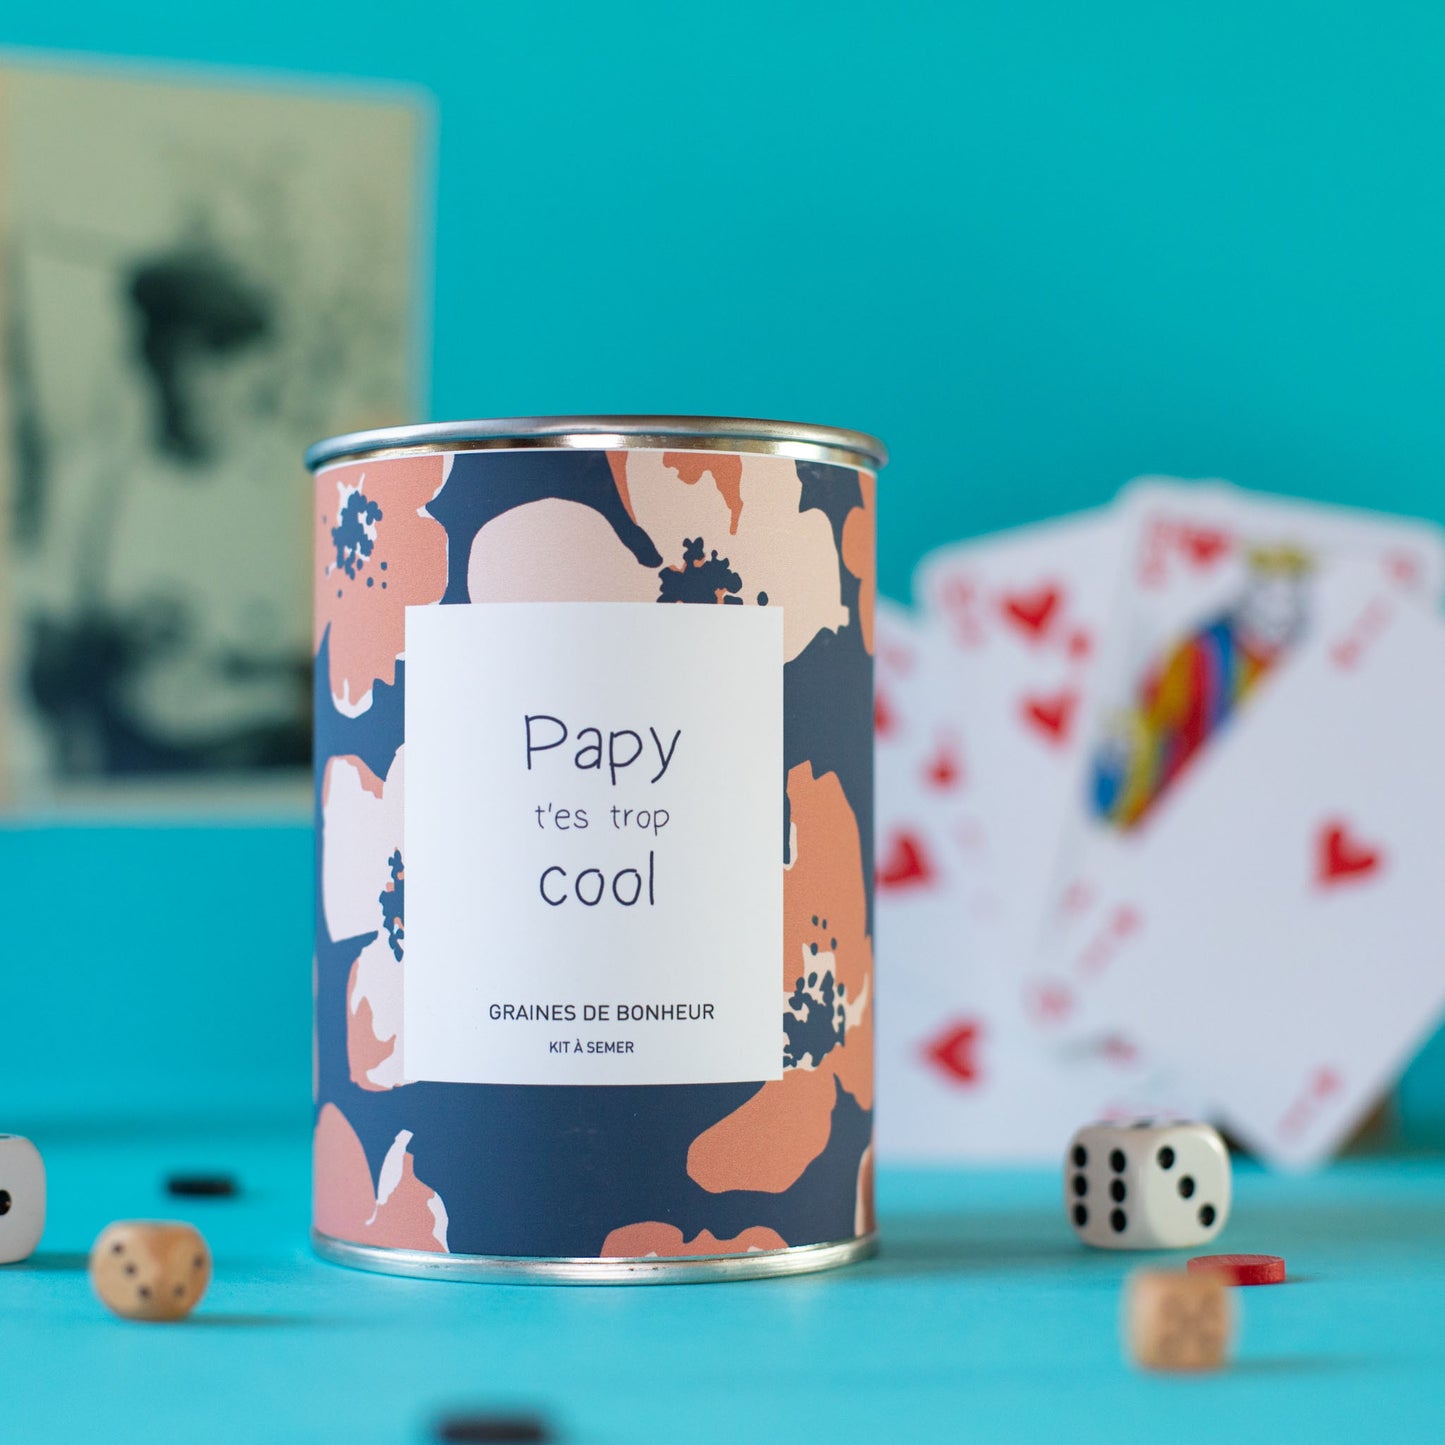 Kit à semer "Papy t'es trop cool" fabriqué en France